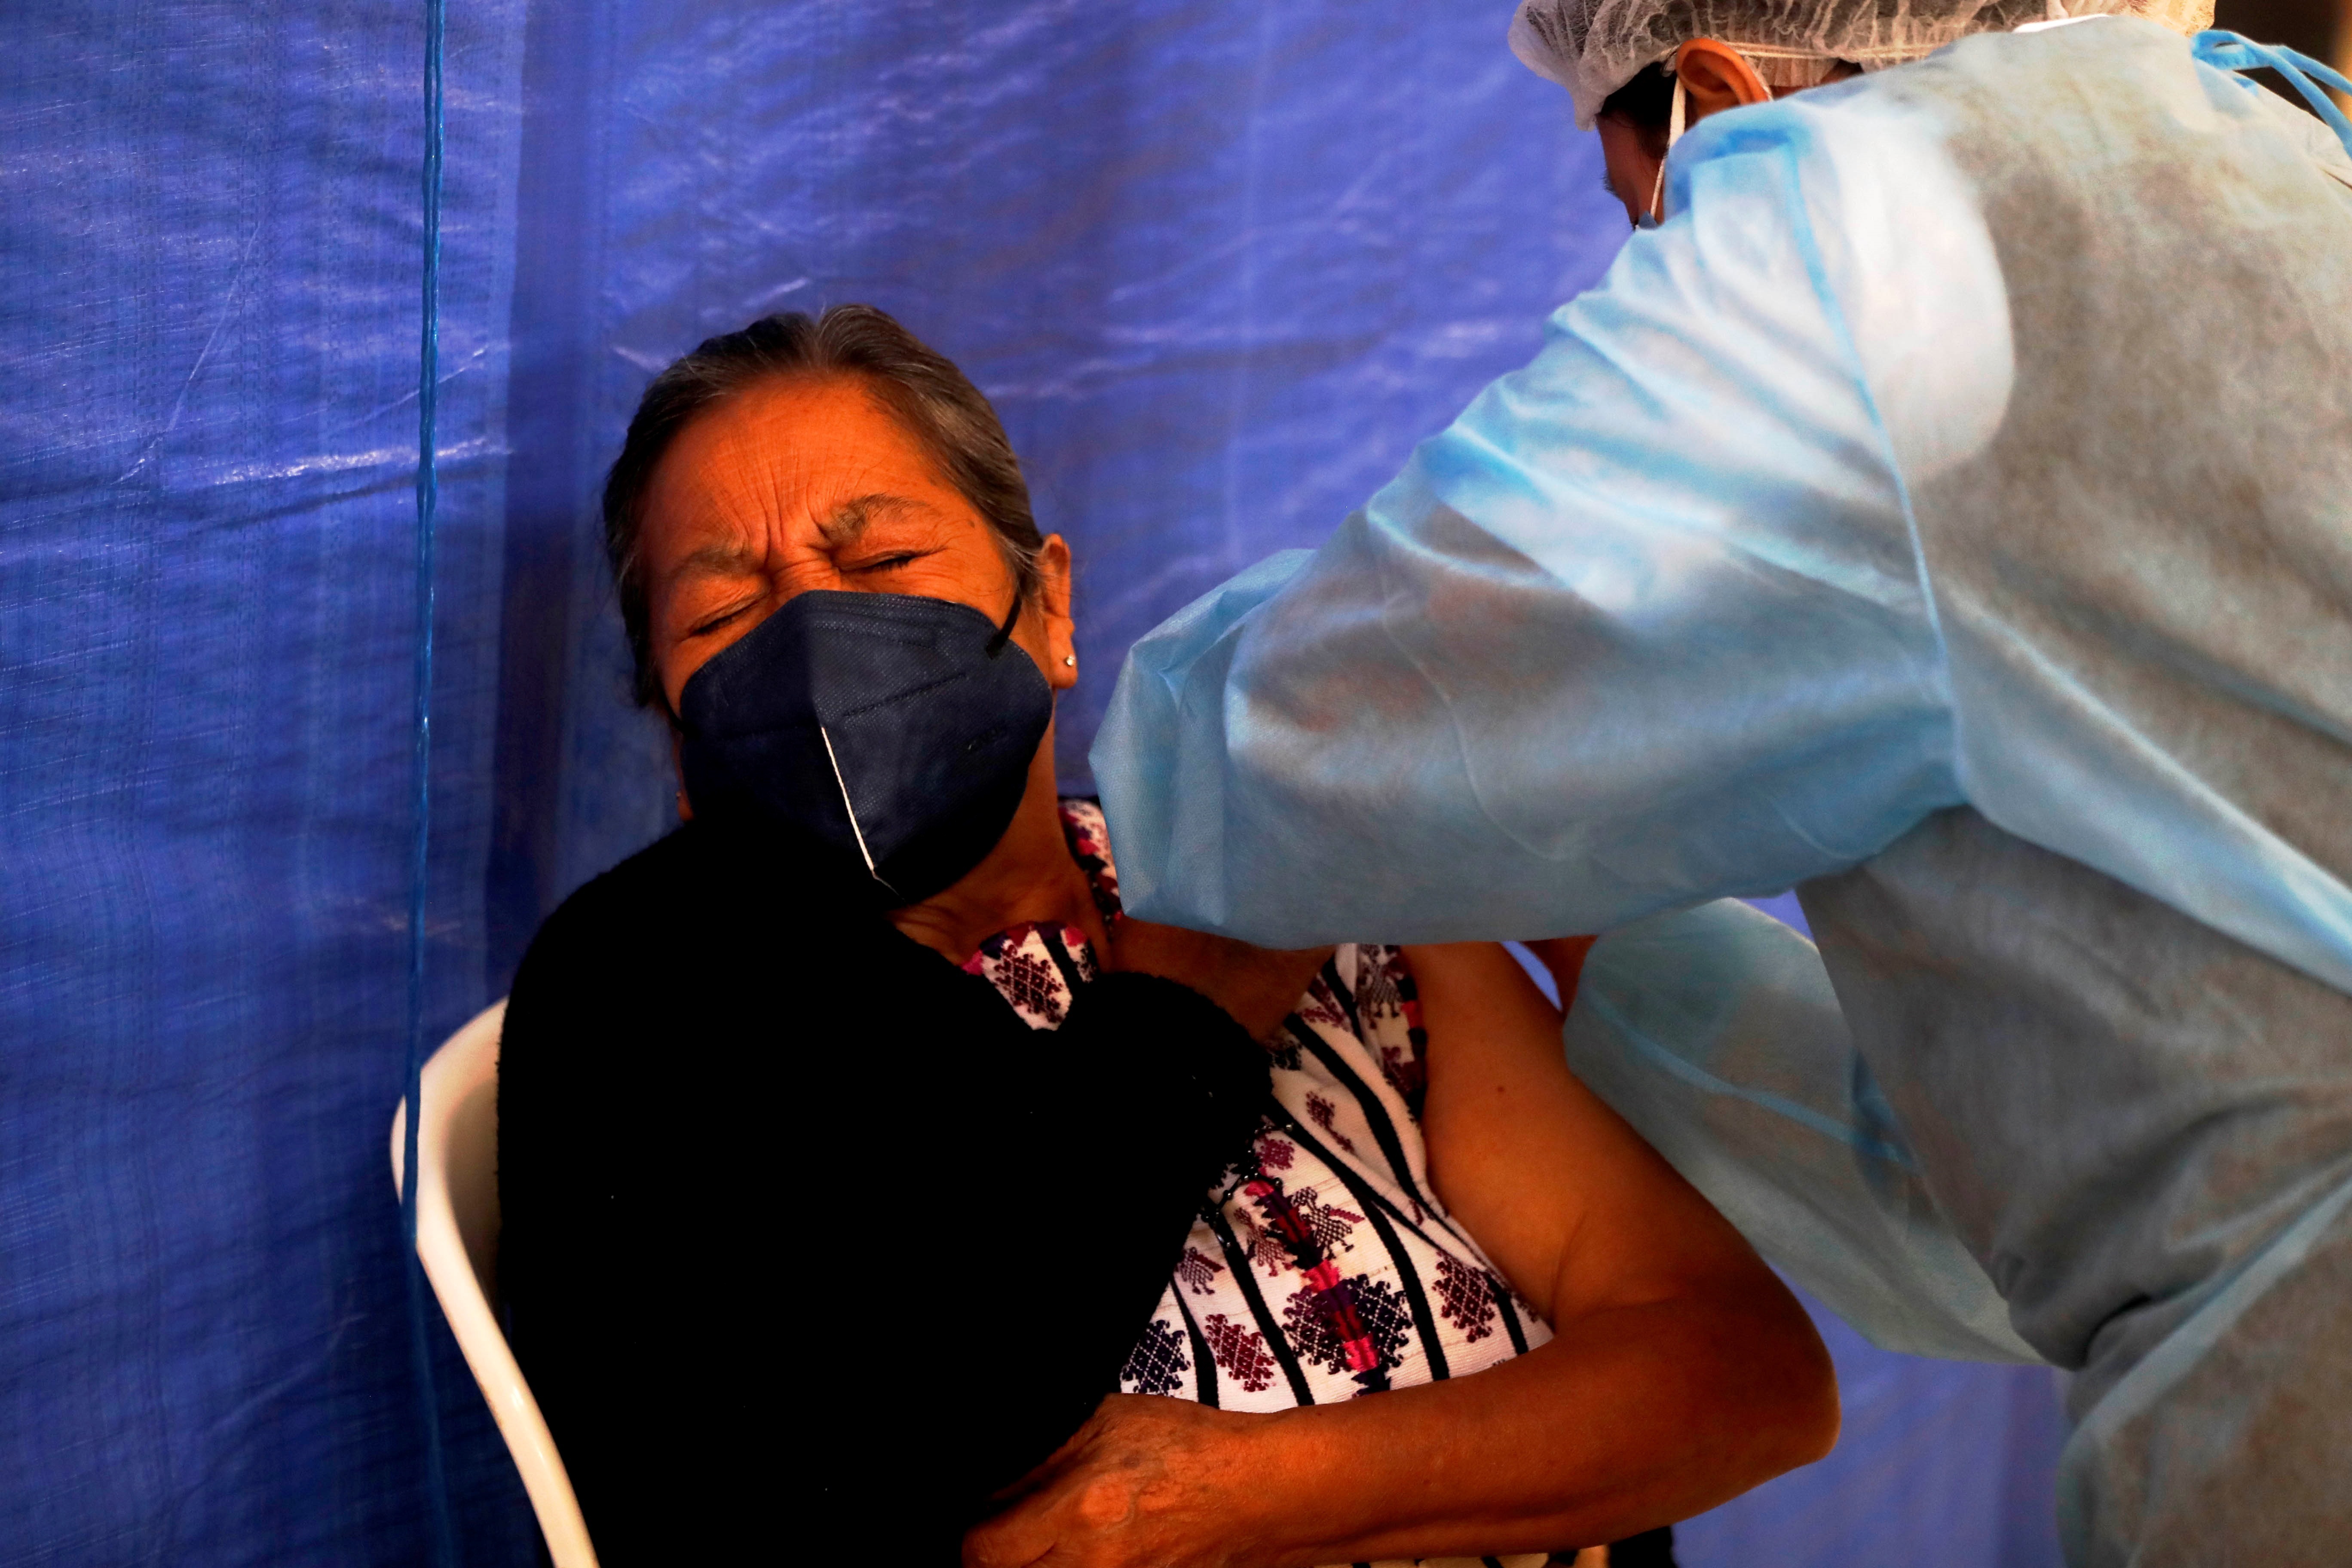 Ciudad de Guatemala, 26 sep (EFE).- Guatemala superó este domingo la barrera de las 10 millones de dosis de vacunas contra la covid-19 recibidas por adquisición o por donaciones con el ingreso a su principal aeropuerto de un cargamento de 500.000 dosis de vacunas Sputnik V, de su primer componente. 
El medio millón de vacunas recibidas forman parte del único contrato de compra de vacunas firmado de manera particular por el Gobierno de Guatemala, en este caso con el Fondo Ruso de Inversión Directa, que consta de 80 millones de dólares por 8 millones de dosis de vacunas.  
Originalmente, en abril pasado, el Ministerio de Salud Pública y Asistencia Social guatemalteco había adquirido el doble de dosis de vacunas Sputnik V en una transacción que implicó el pago por adelantado de la mitad del monto absoluto que rondaba los 160 millones de dólares.  
Pero atrasos en la entrega del fármaco y la presión social que exigía las vacunas contra la covid-19 obligaron al Ejecutivo guatemalteco a volver a negociar el contrato con Rusia, por lo que quedó establecido la mitad, tanto del producto como del cargo a desembolsar ya entregado en su totalidad en abril. 
Con la llegada del medio millón de dosis de vacunas elaboradas por el Instituto Gamaleya ruso, el país centroamericano alcanzó las 10.099.220 dosis de inmunizantes para combatir la pandemia del coronavirus.  
Además de la adquisición de vacunas procedentes de Rusia, Guatemala también compró 2,6 millones de dosis de vacunas mediante el Fondo de Acceso Global para Vacunas Covid-19 (Covax, en inglés) de la Organización Mundial de al Salud (OMS), de las que ha recibido 724.800 dosis de AstraZeneca y 533.520 dosis de Pfizer. 
El país centroamericano, sin embargo, ha recibido la mayoría de las más de 10,09 millones de dosis a través de donaciones (un 66 %) de Estados Unidos, España, México, Canadá, República Dominicana, India e Israel. 
Guatemala acumula desde marzo de 2020 un total de 549.560 casos positivos de covid-19, de los cuales 13.375 han fallecido y 30.965 aún continúan activos, según datos del Ministerio de Salud Pública y Asistencia Social.  
Con uno de los peores registros de vacunación del continente, en 6 meses de haber comenzado con este Guatemala apenas ha inmunizado a 4,36 millones de personas con la primera dosis de la vacuna anticovid-19 y solo 2,28 millones cuentan con el esquema completo, correspondiente a dos dosis.
